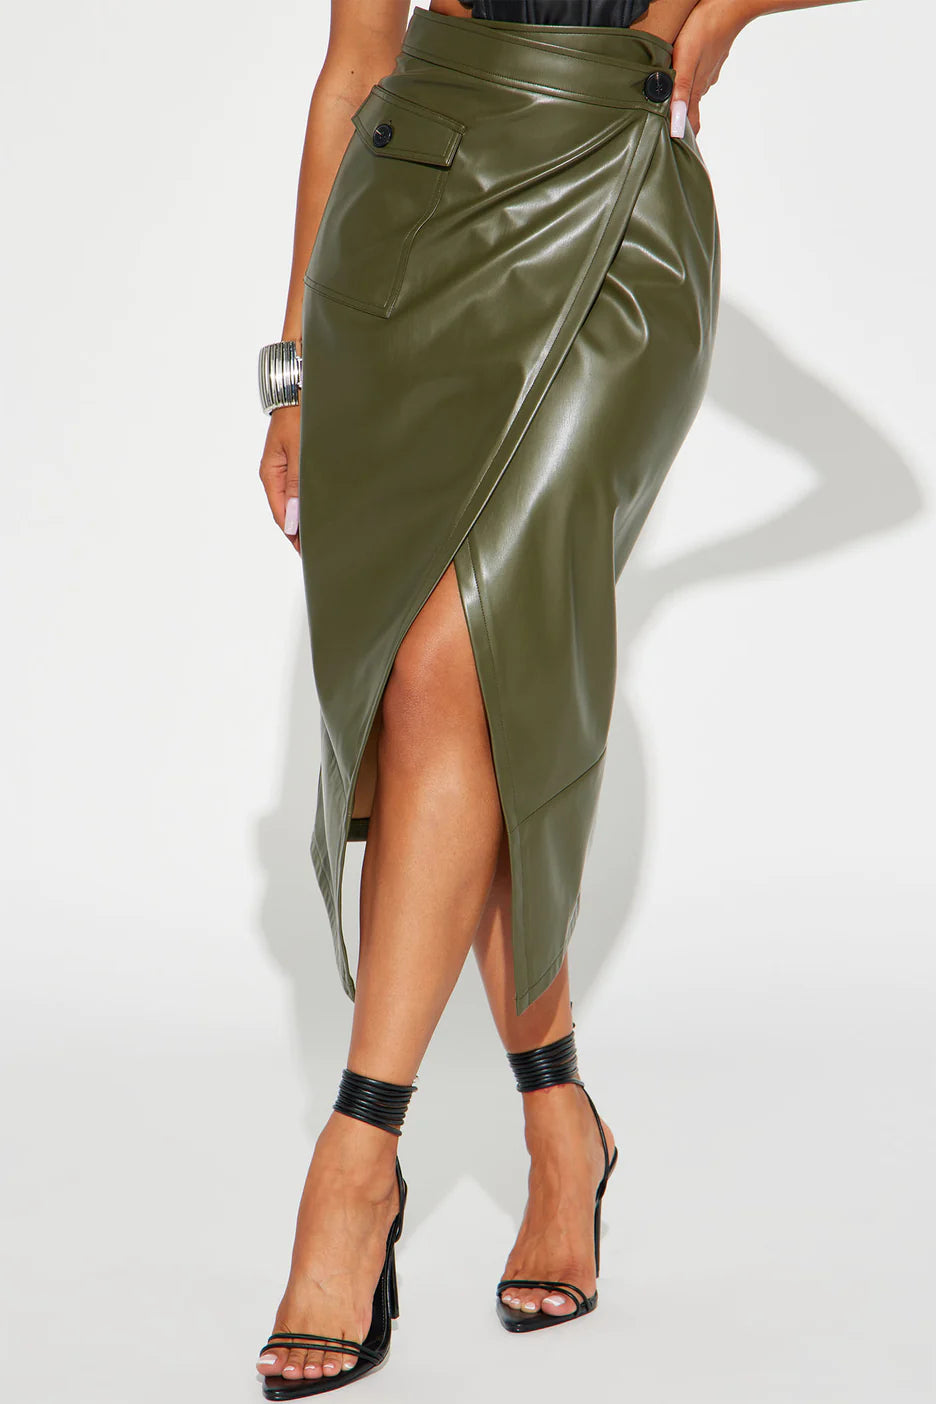 Fashionnova Maeva Faux Leather Midi Skirt